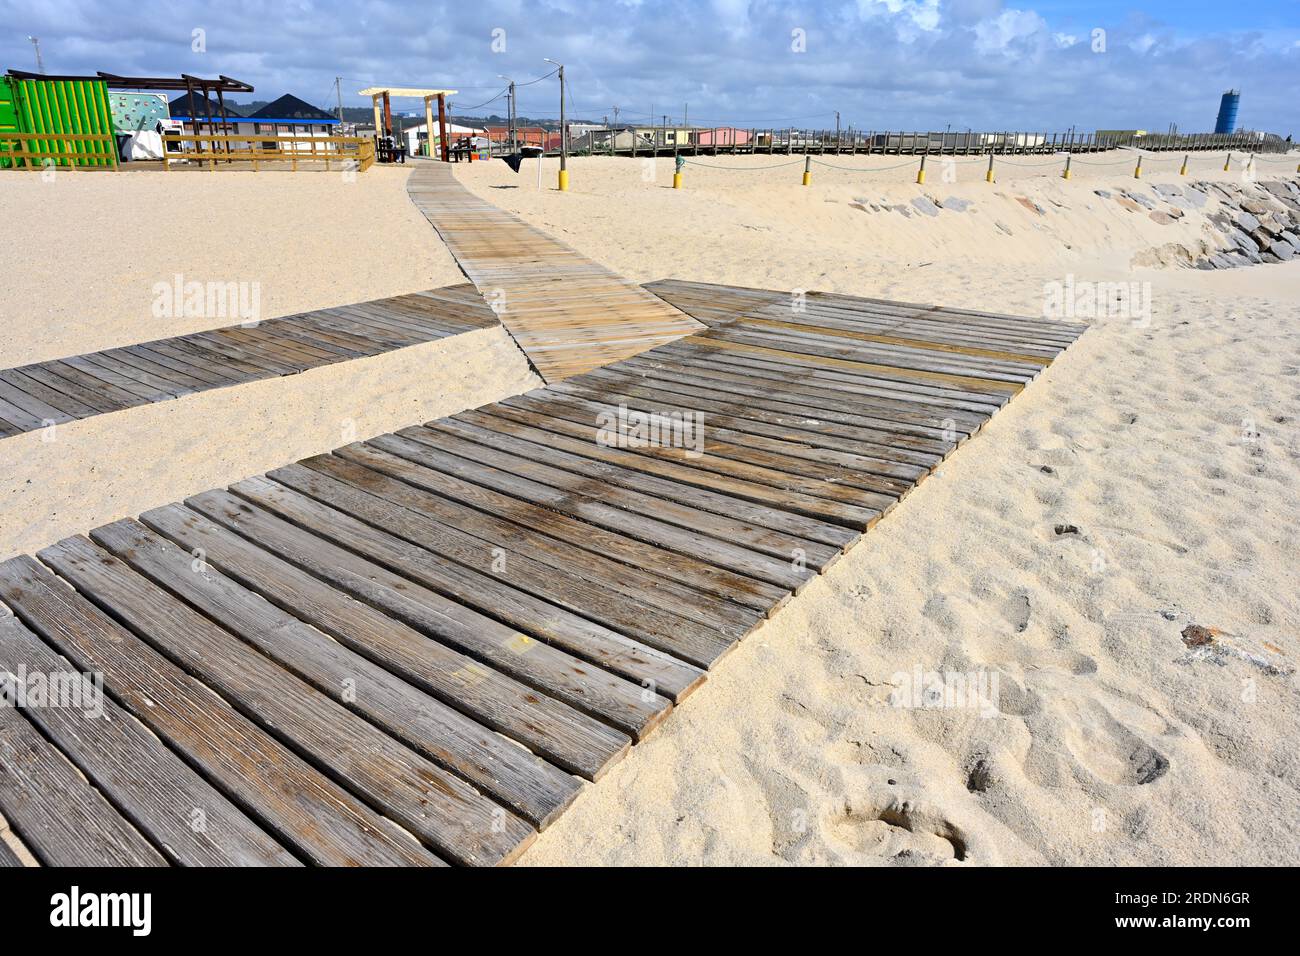 Promenade à travers le sable à Praia de paramos, plage avec défenses marines en pierre près d'Espinho, Portugal Banque D'Images